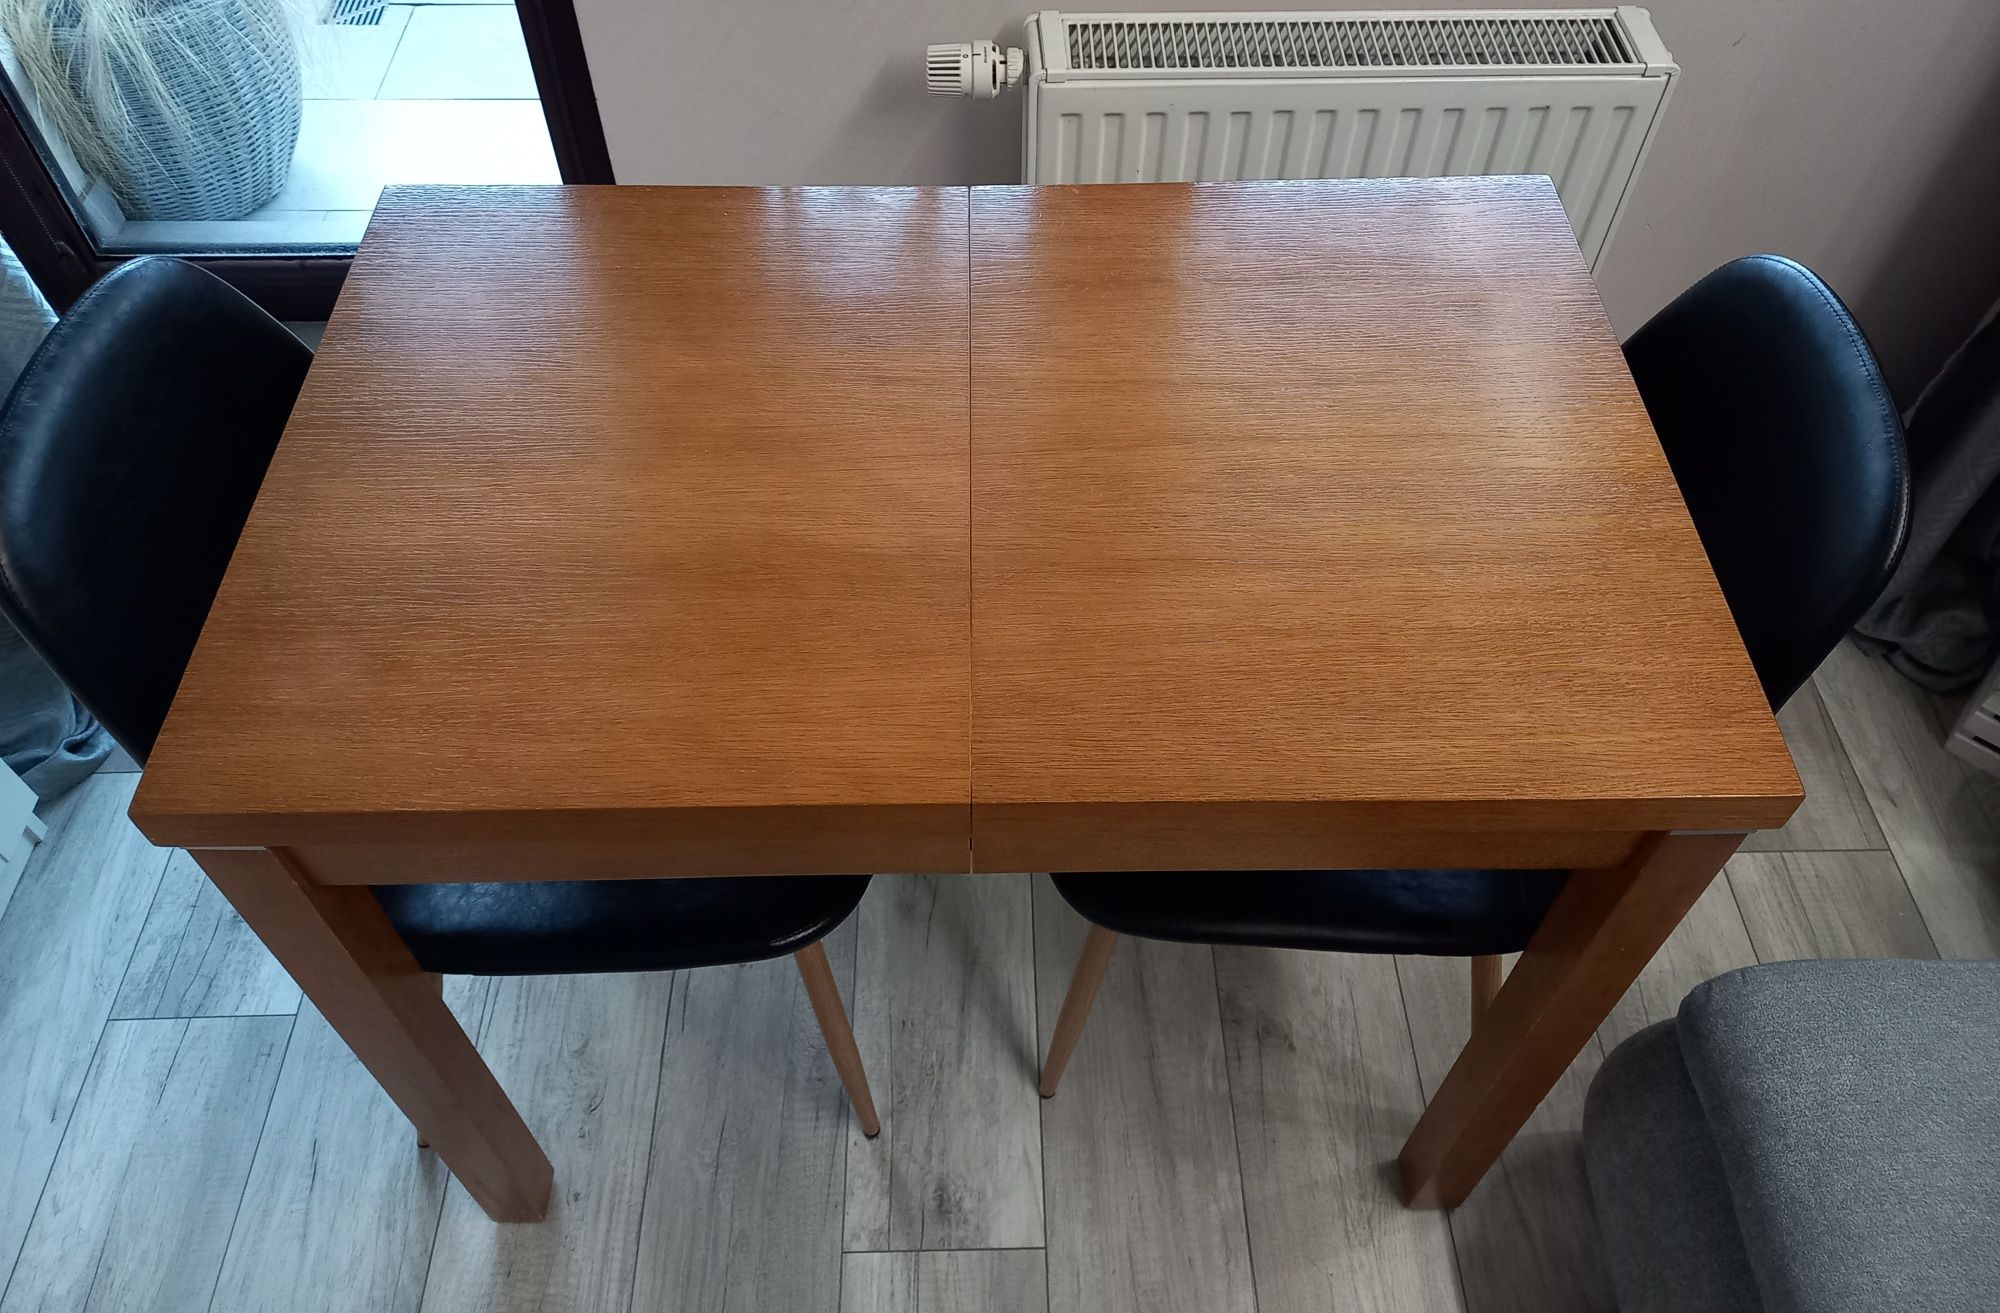 Stół drewniany 97 cm x 57 cm rozkładany z 4 wkładkami do 179 cm